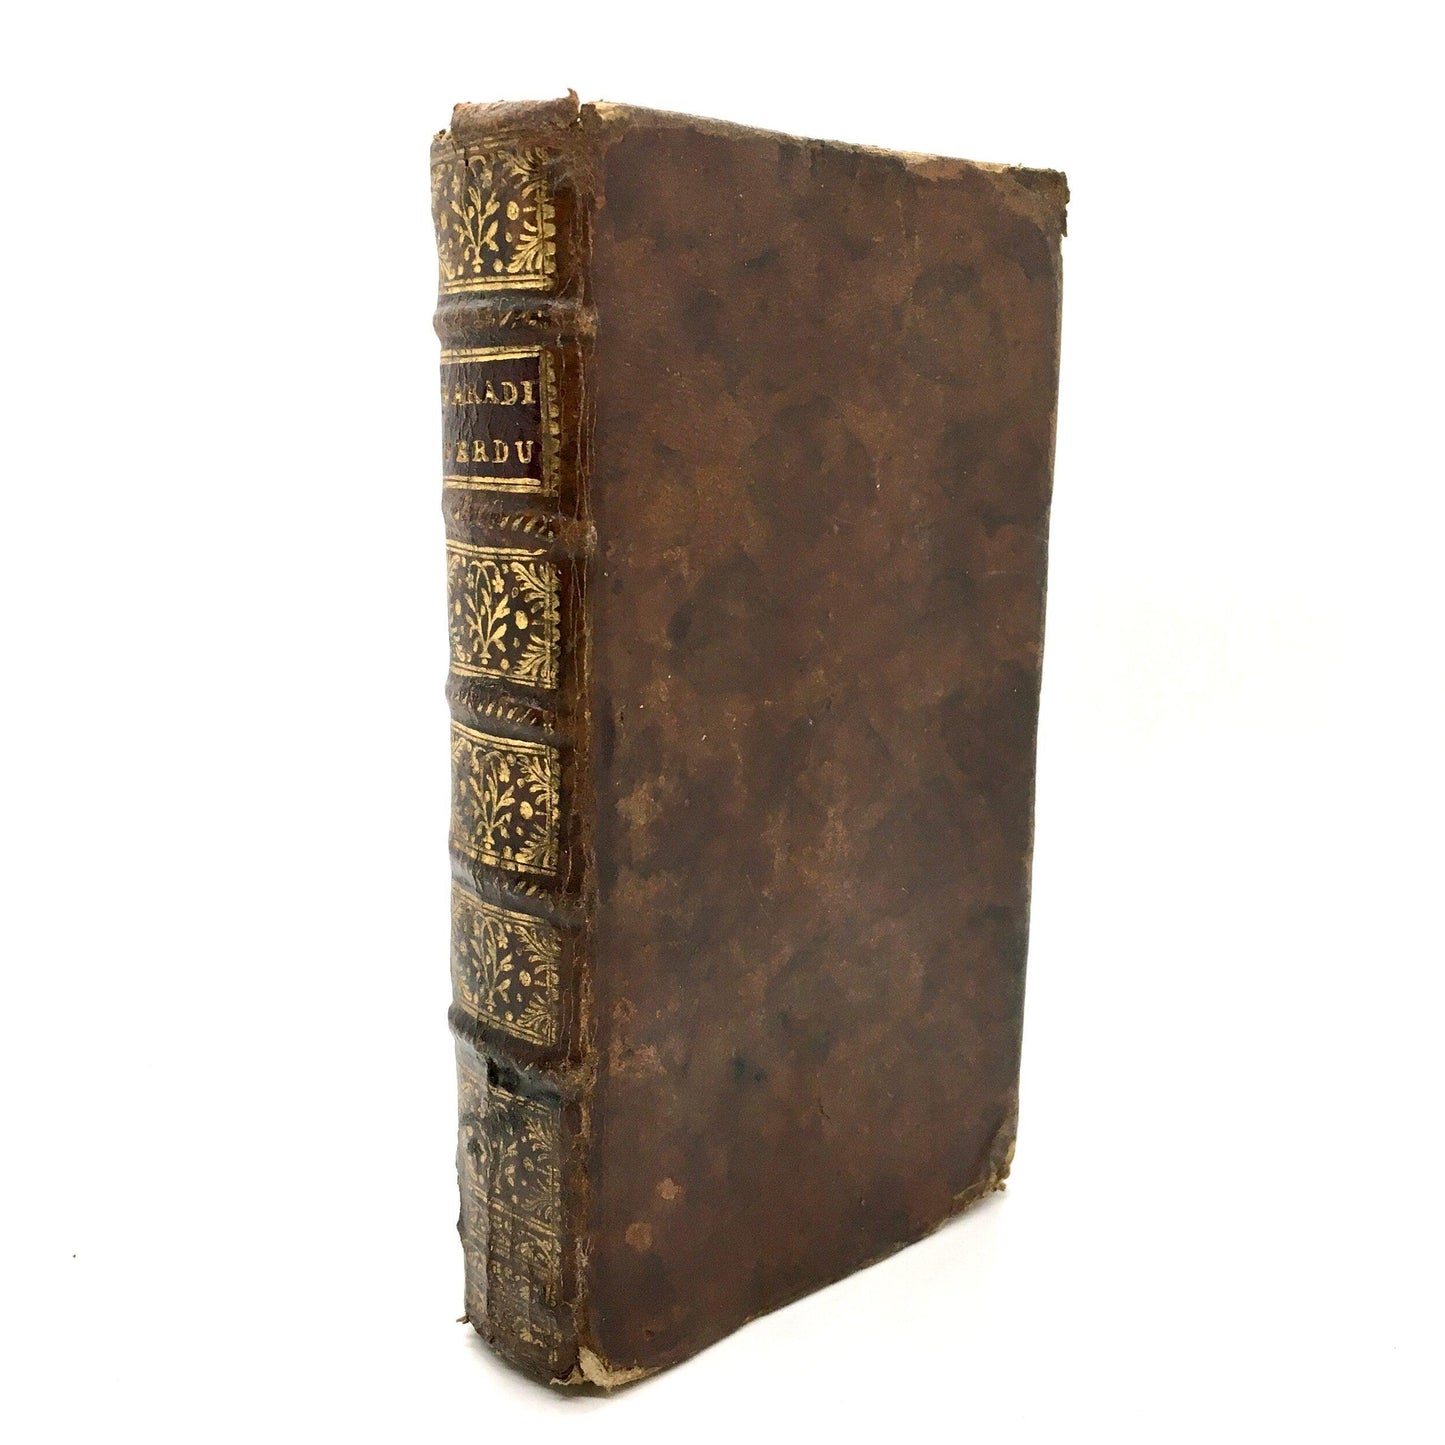 MILTON, John "Le Paradis Perdu de Milton" [Chez M.G. Merville, 1740] - Buzz Bookstore